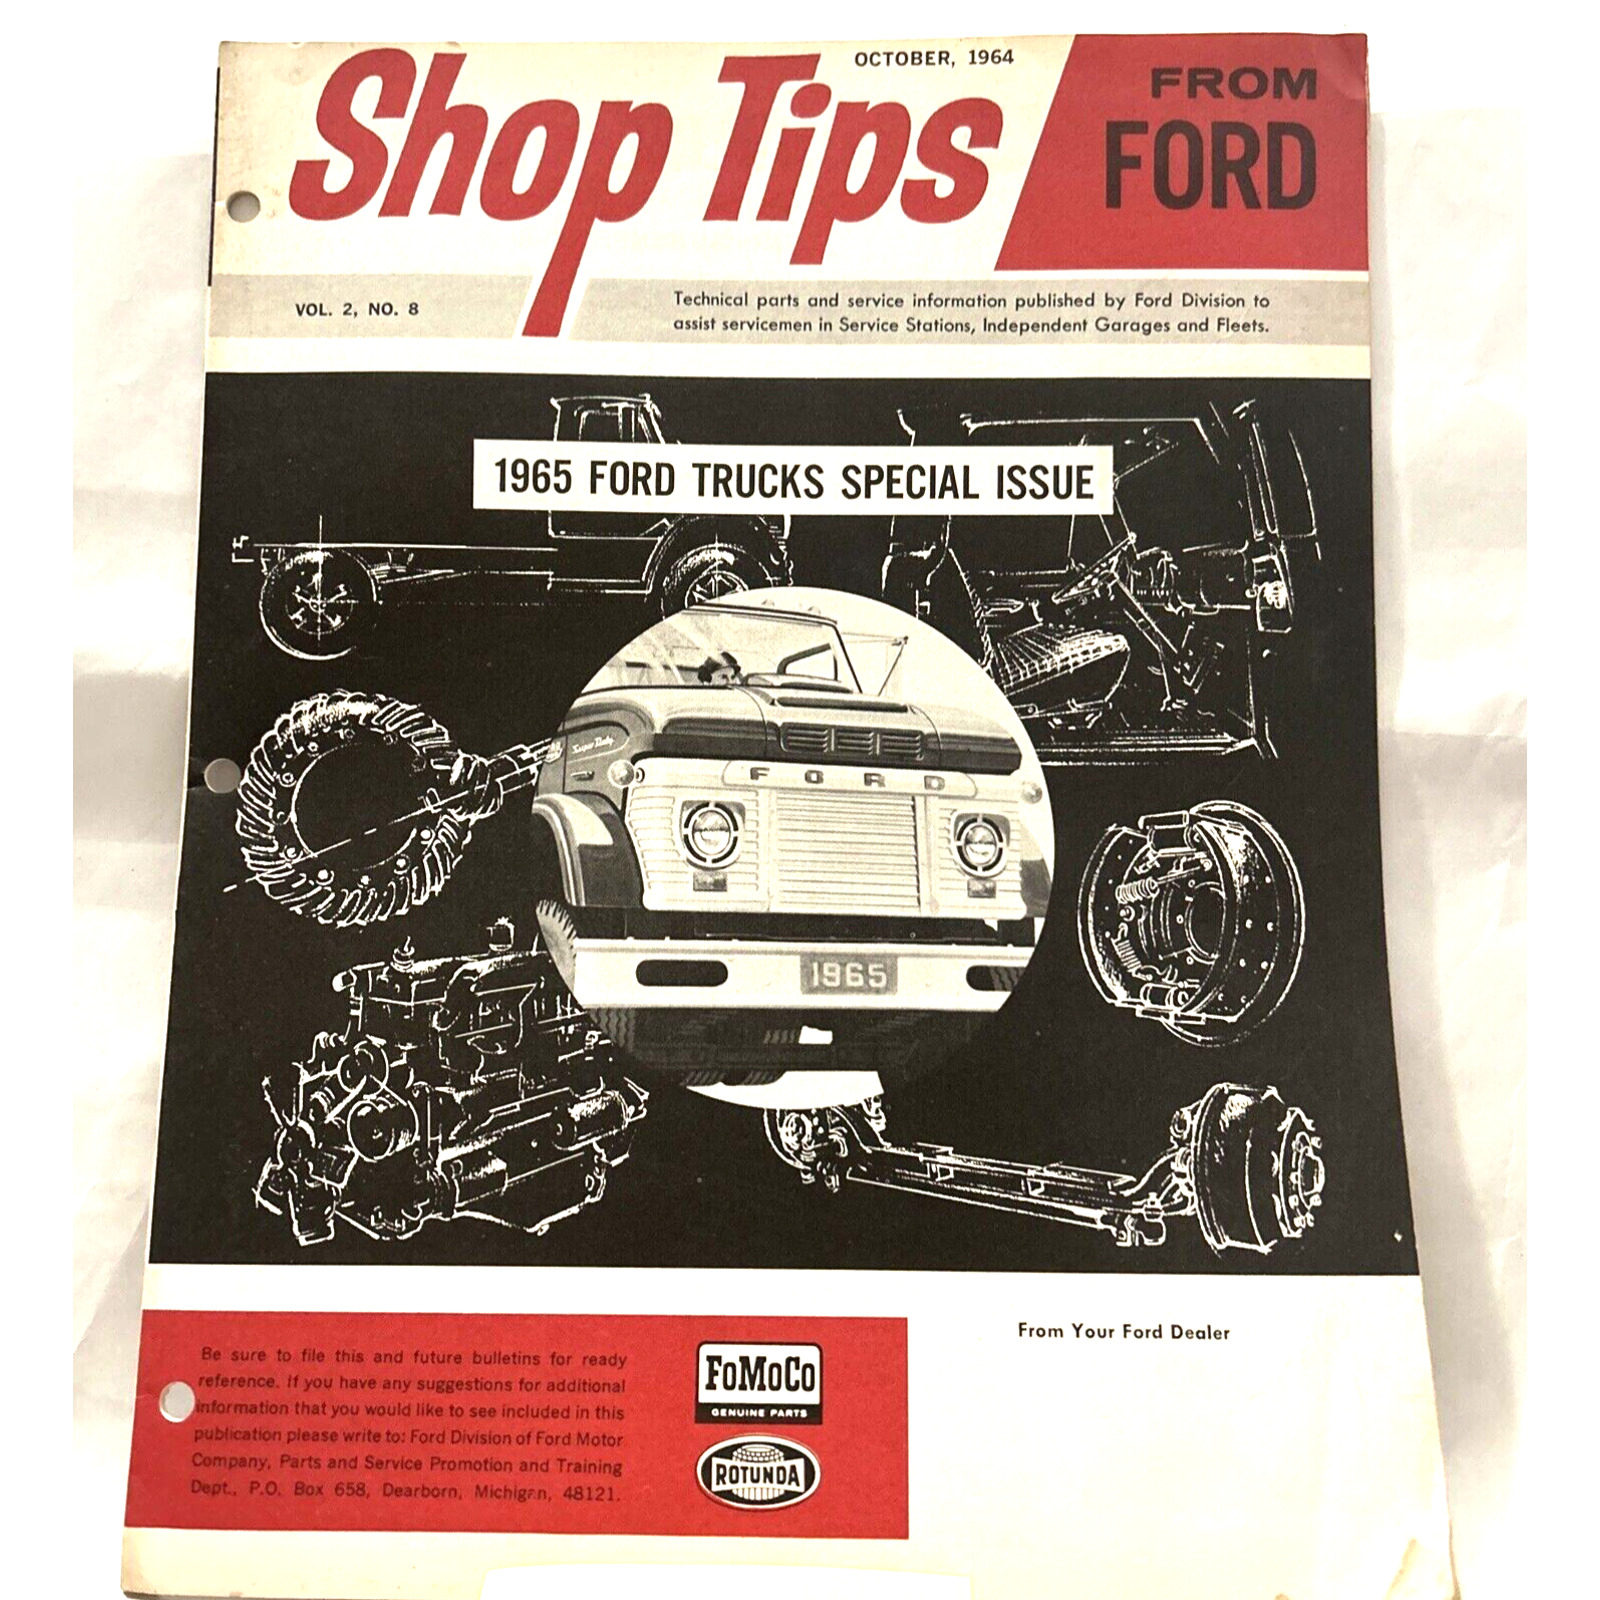 Vtg 1964 October Ford Shop Tips Vol 2 No 8 1965 Trucks Special Issue